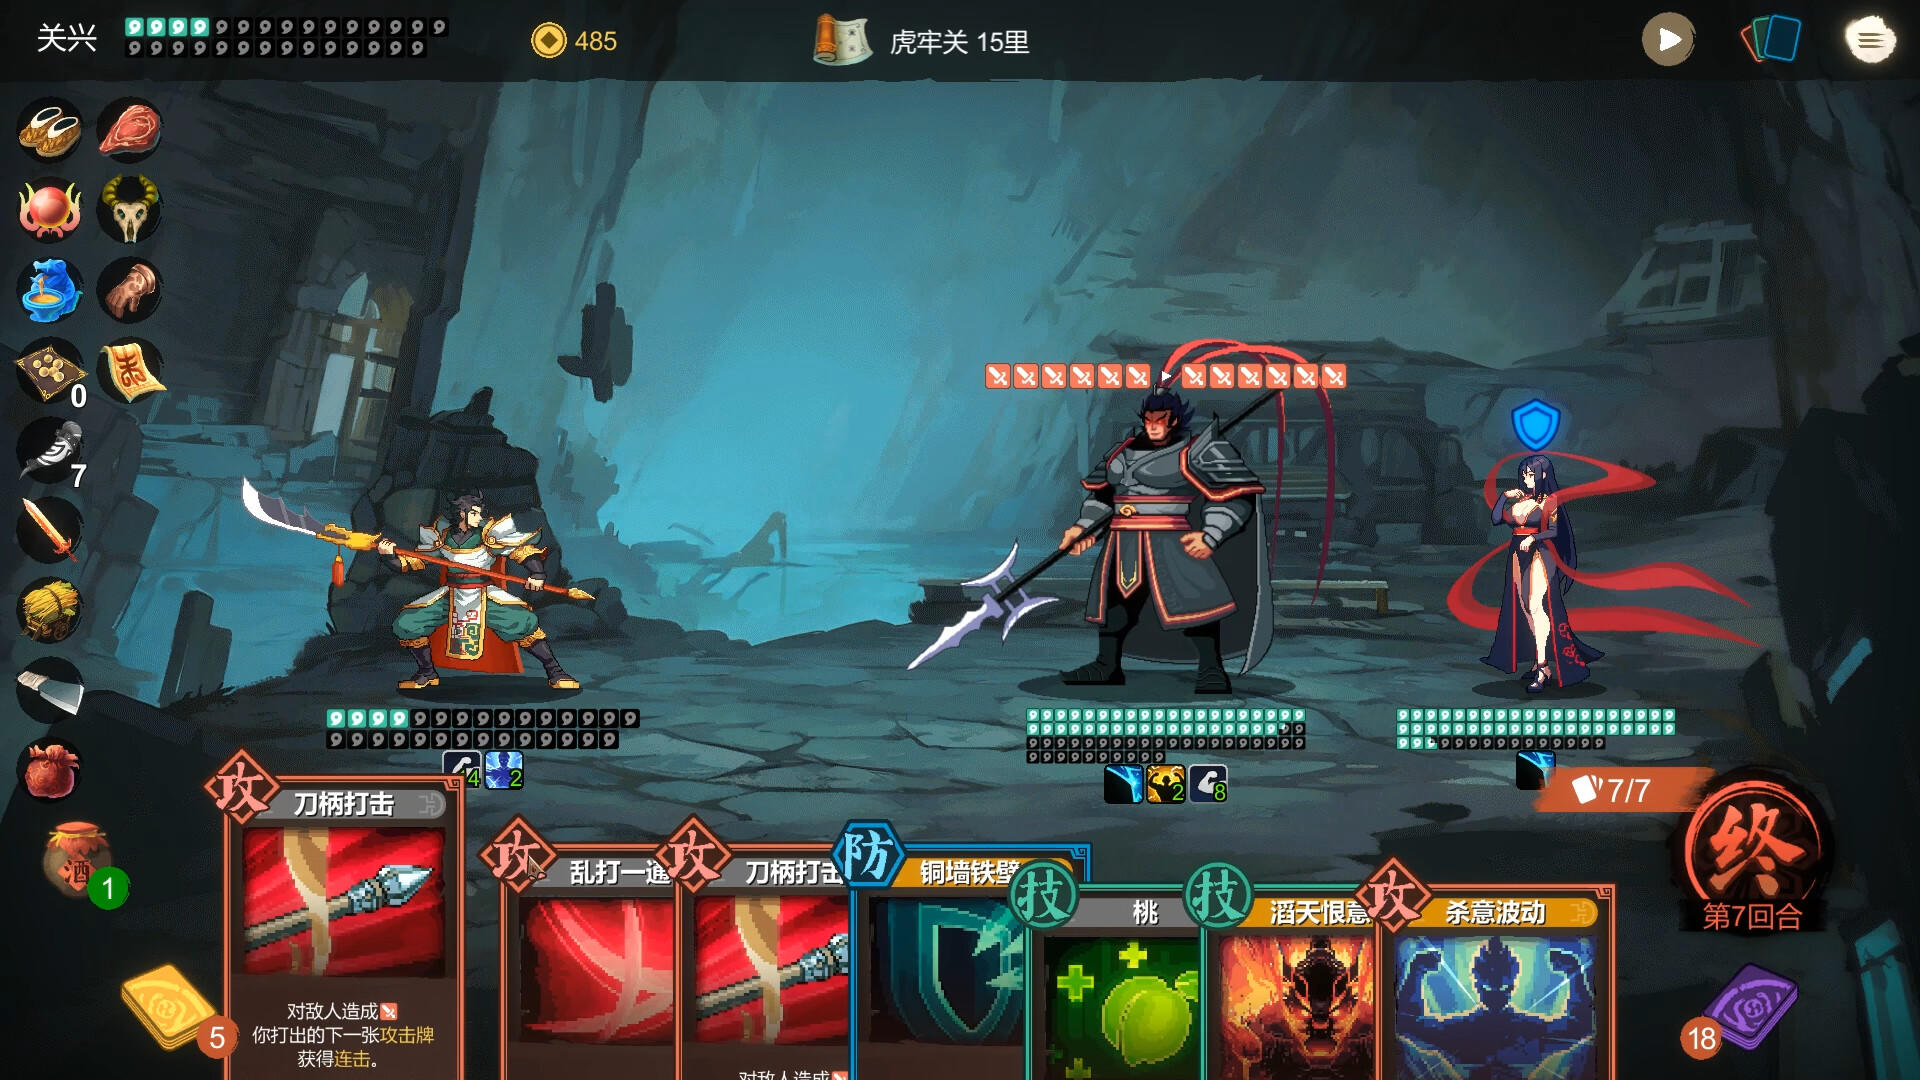 Shumo screenshot game